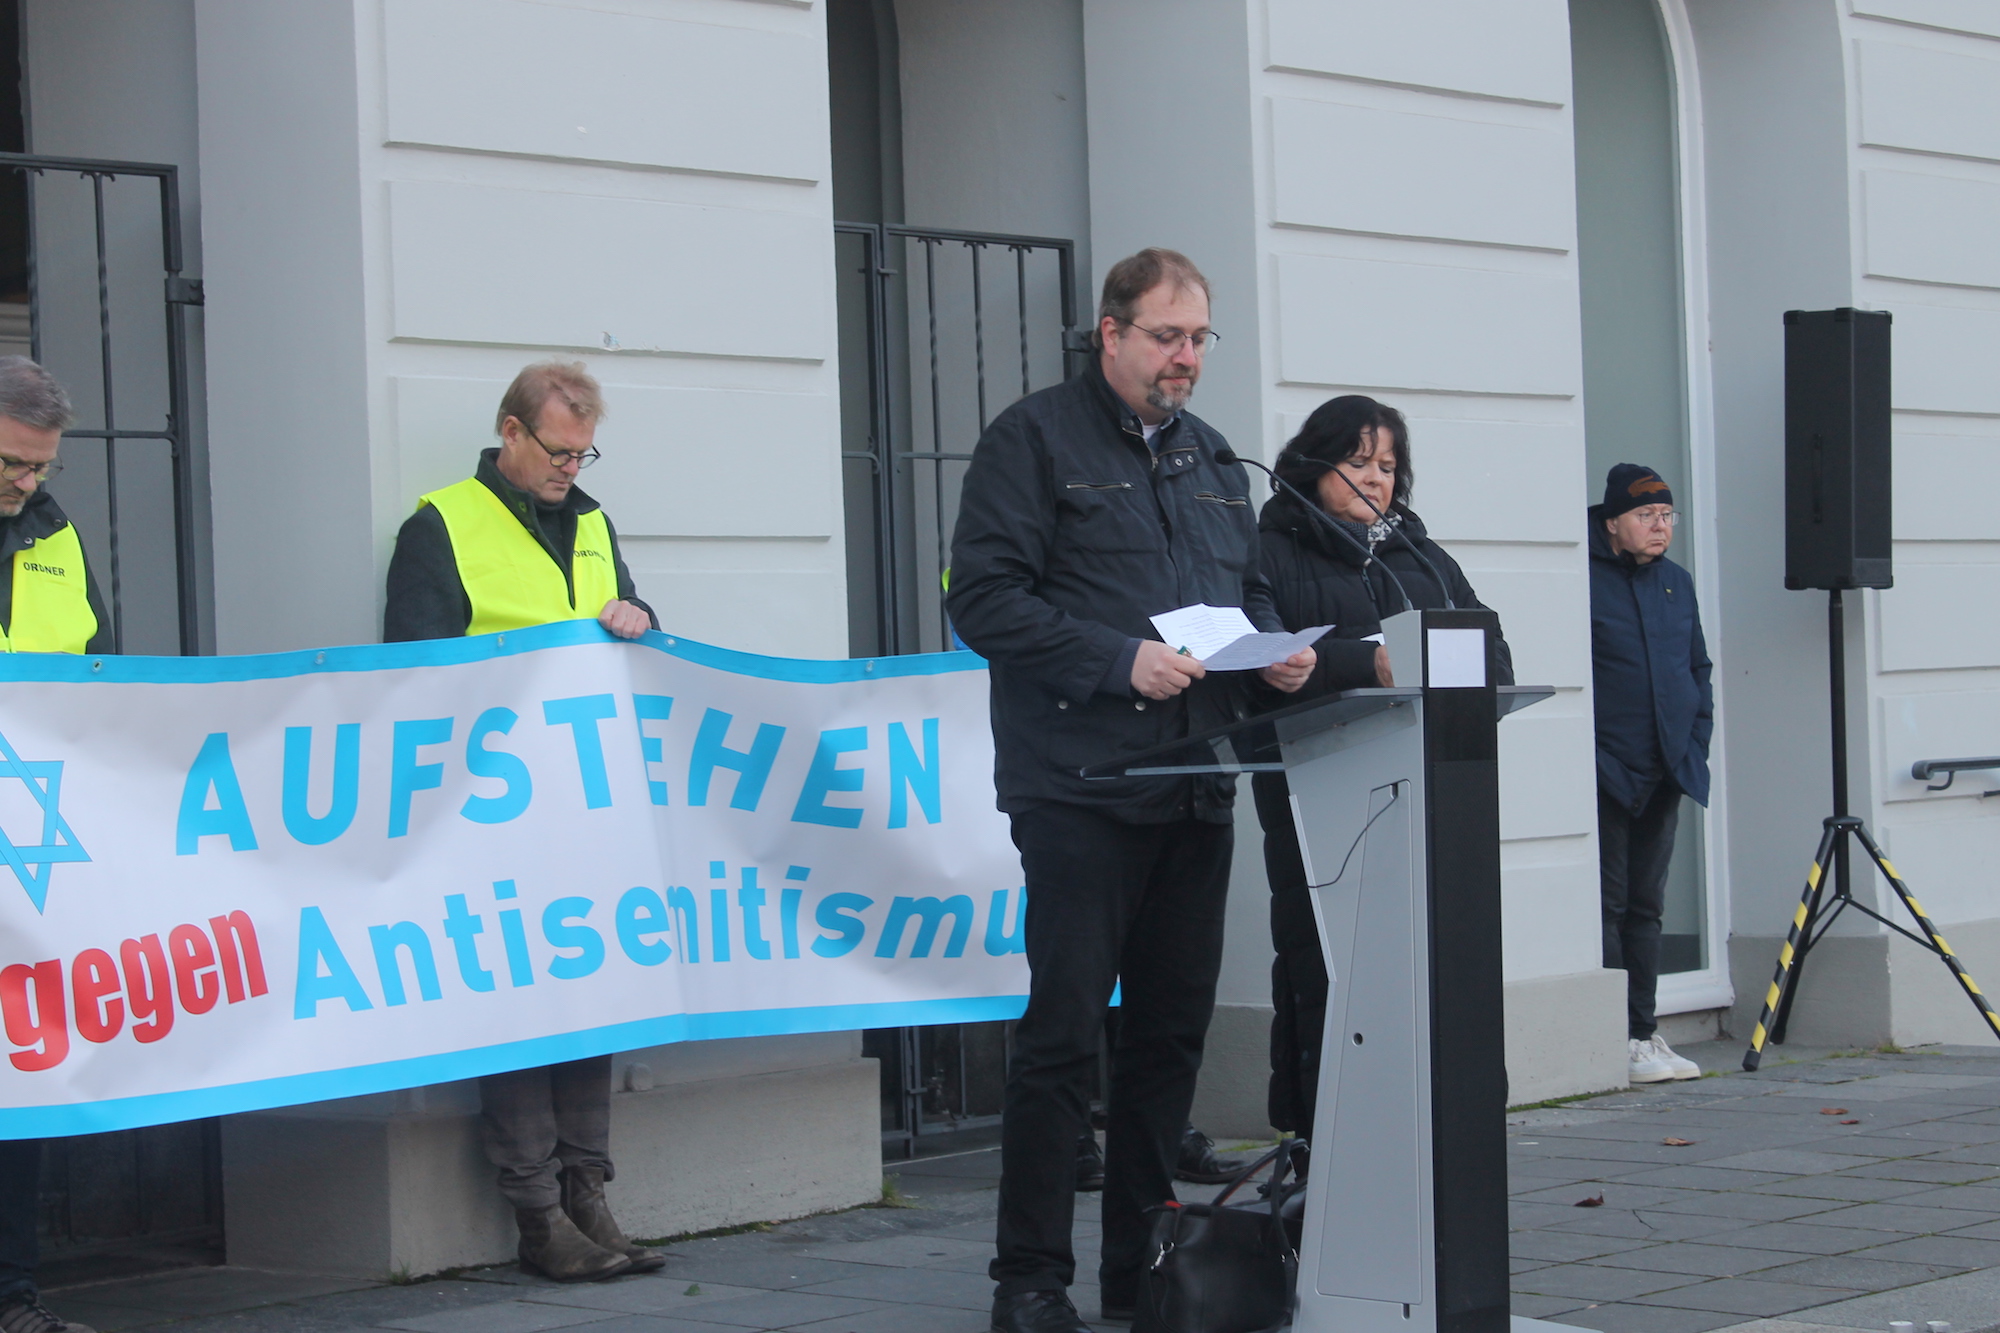 Auch das gehört dazu: Pfarrer Thorsten Obst bei einer Kundgebung gegen Antisemitismus in Krefeld. (c) Kathrin Albrecht